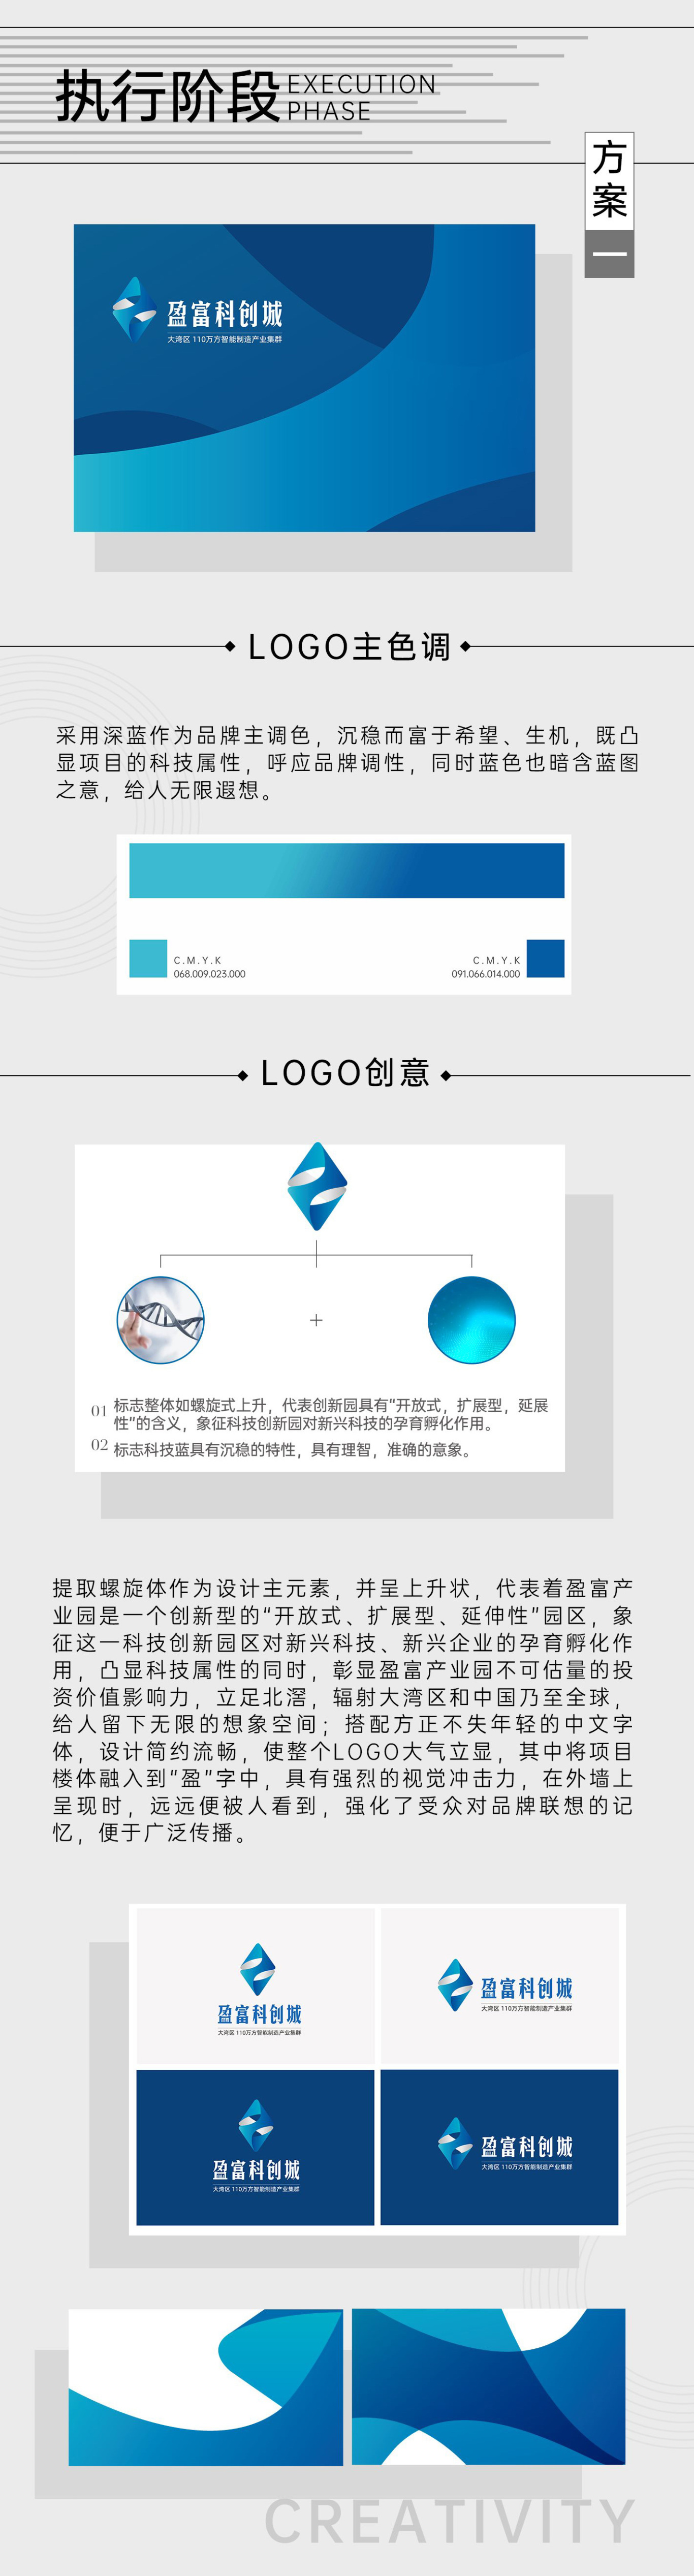 『盈富产业园』地产品牌包装企业VI设计 LOGO设计(方案一)图1